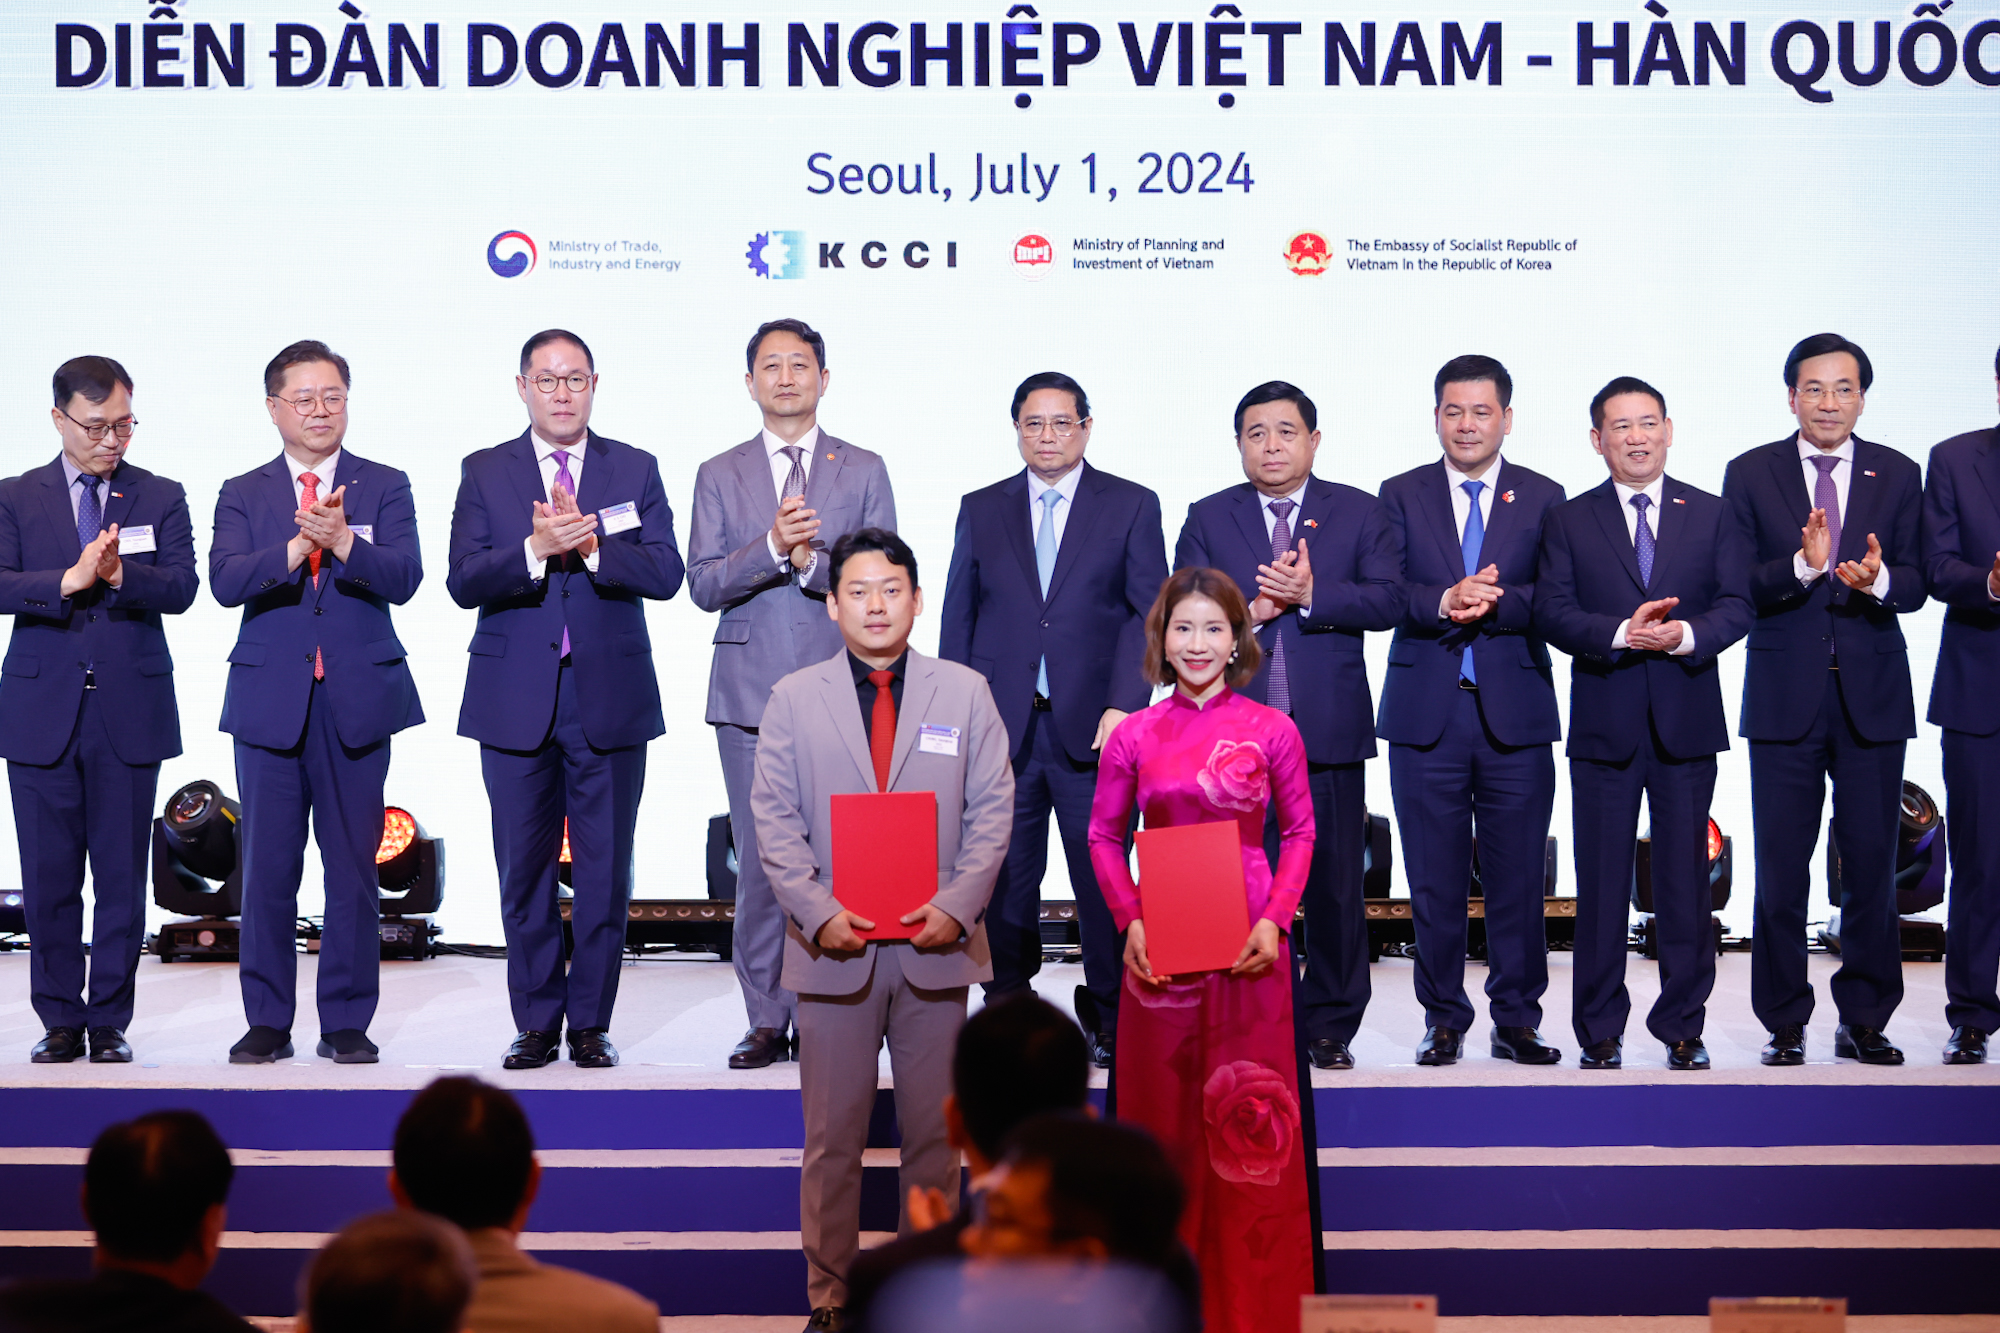 Vinapharm và Celltrion ký kết biên bản ghi nhớ về thành lập một công ty sản xuất các sản phẩm dược sinh học, dược phẩm tại Việt Nam cung cấp cho thị trường Việt Nam và các thị trường khác - Ảnh: VGP/Nhật Bắc